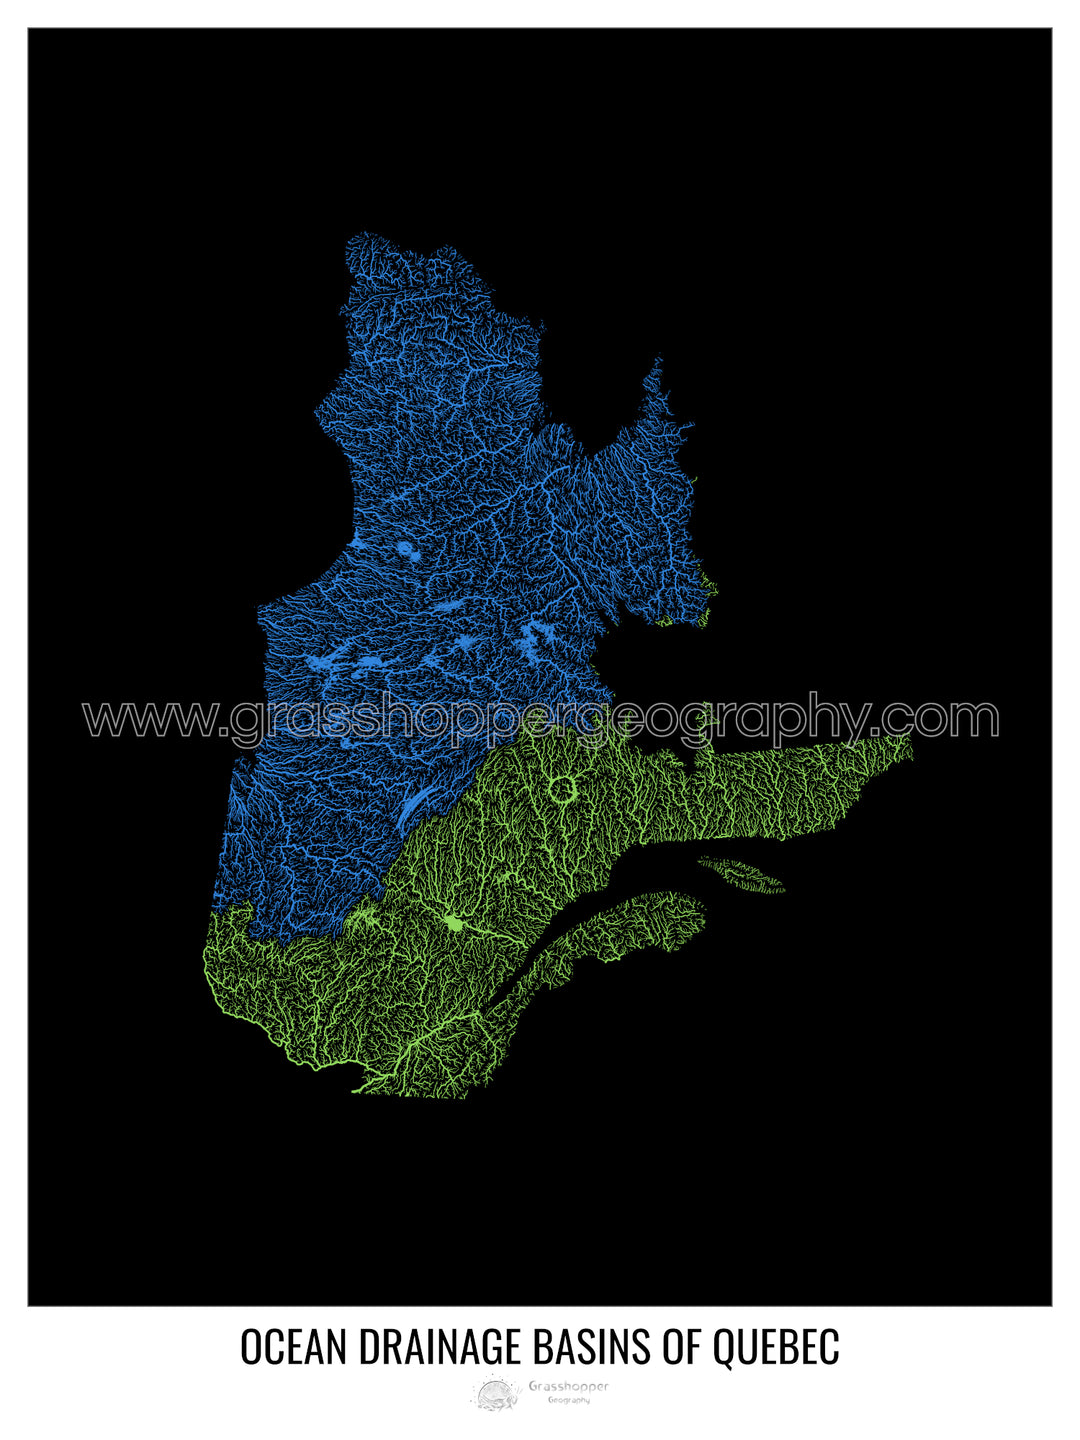 Québec - Carte des bassins versants océaniques, noir v1 - Tirage d'art avec cintre